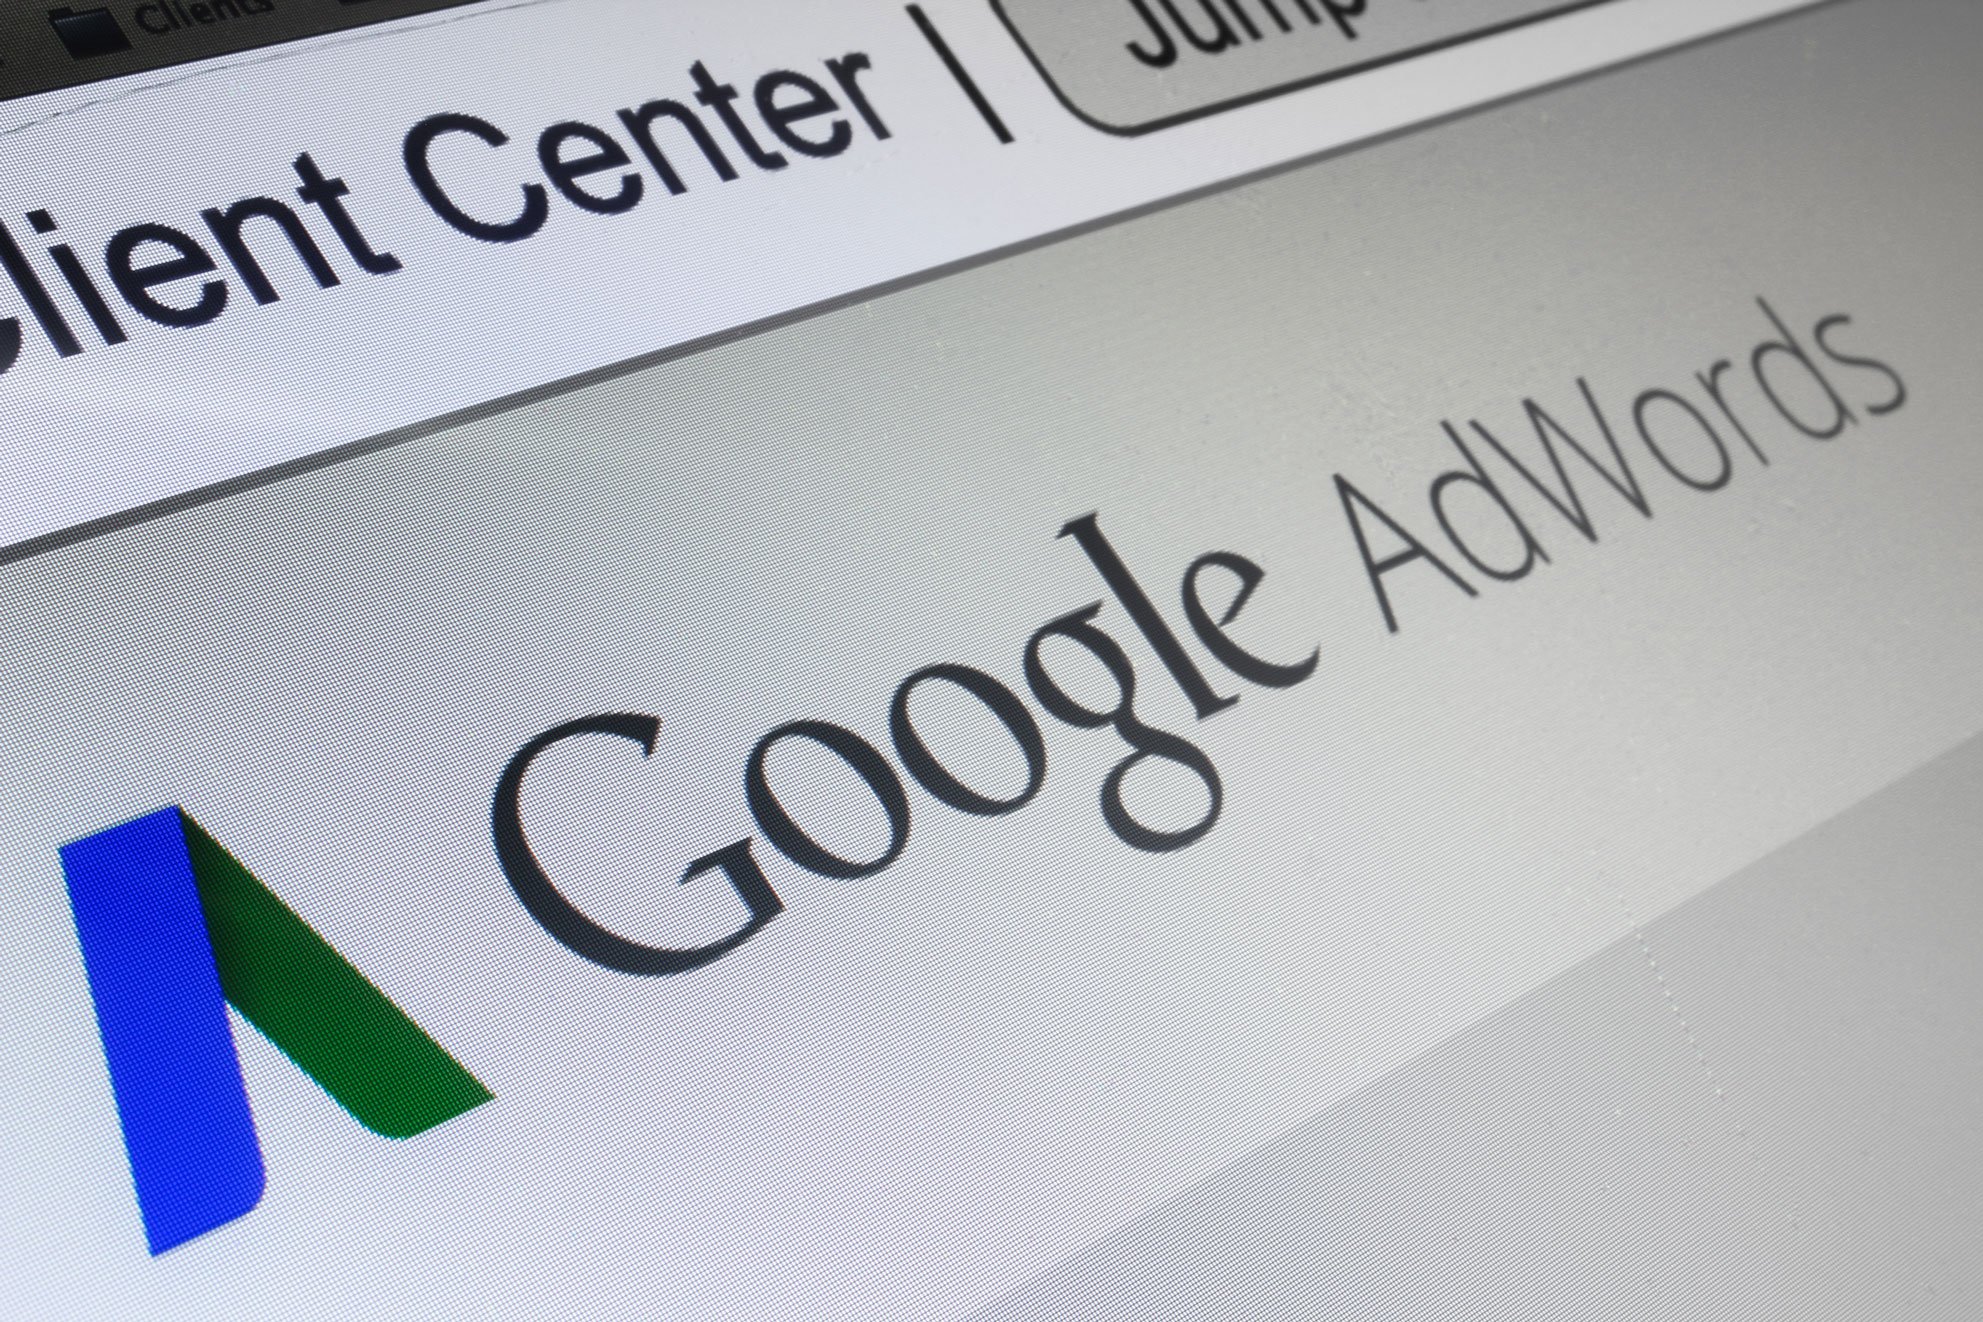 Kreatic booste votre visibilité sur Google en gérant vos campagnes Google AdWords.